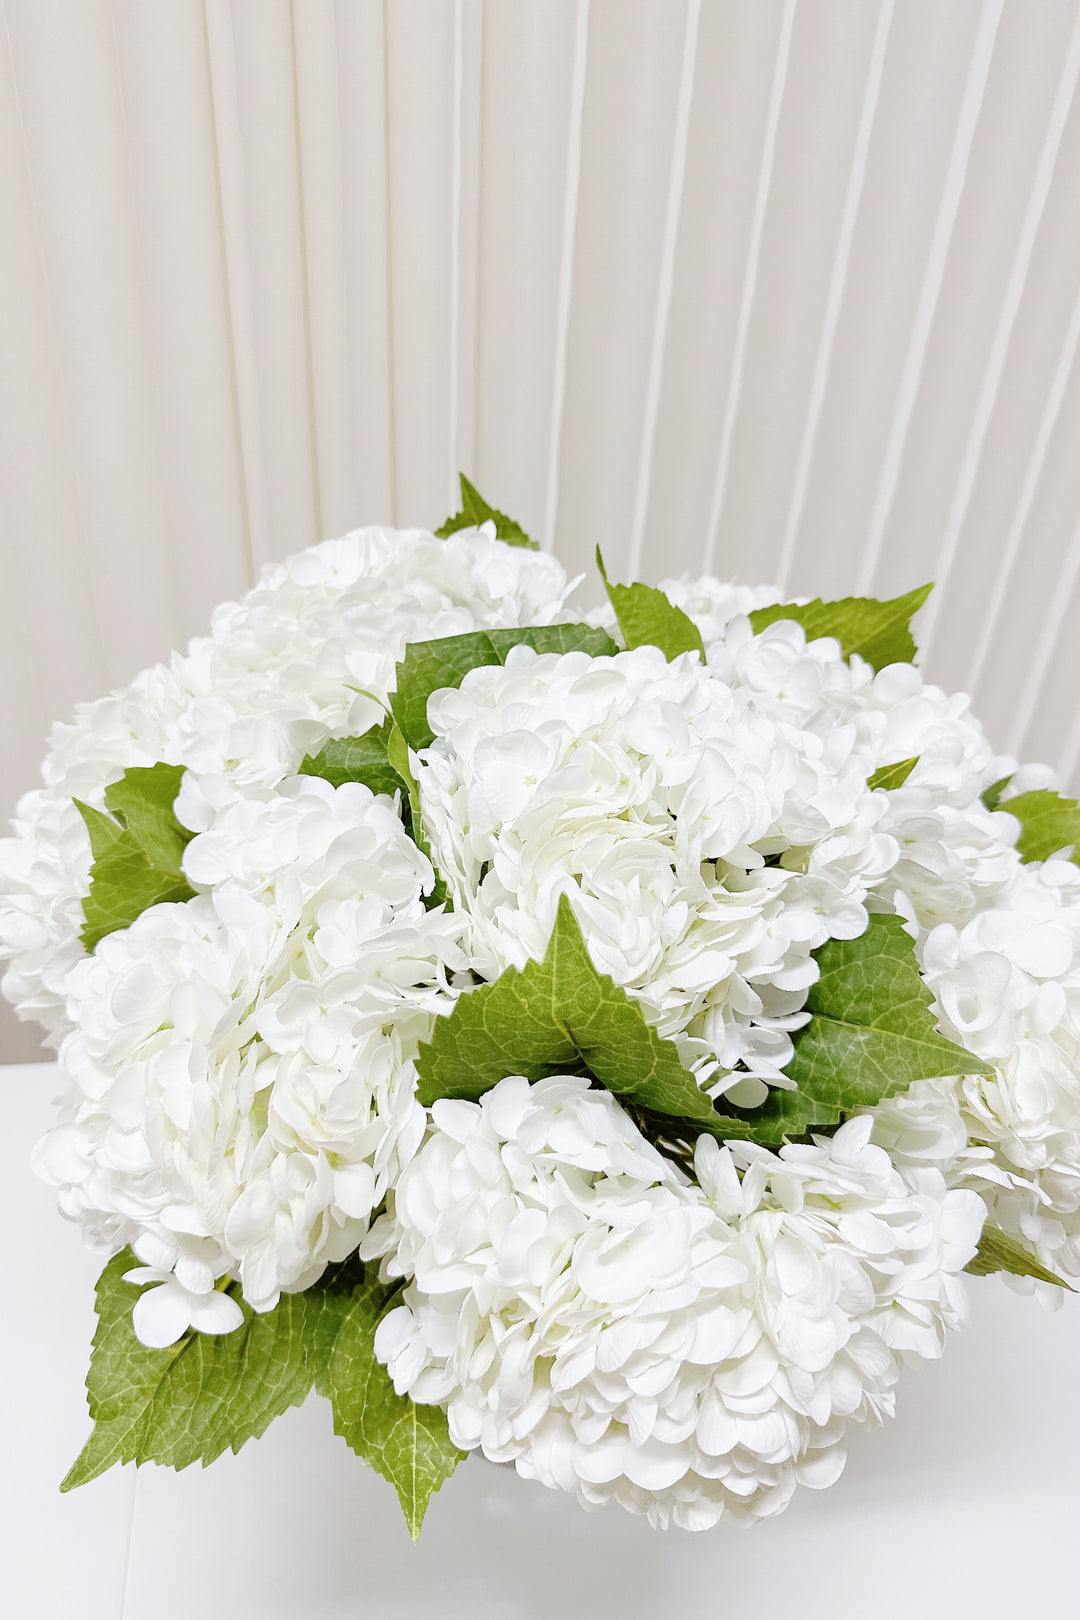 Refreshing White Hydrangea